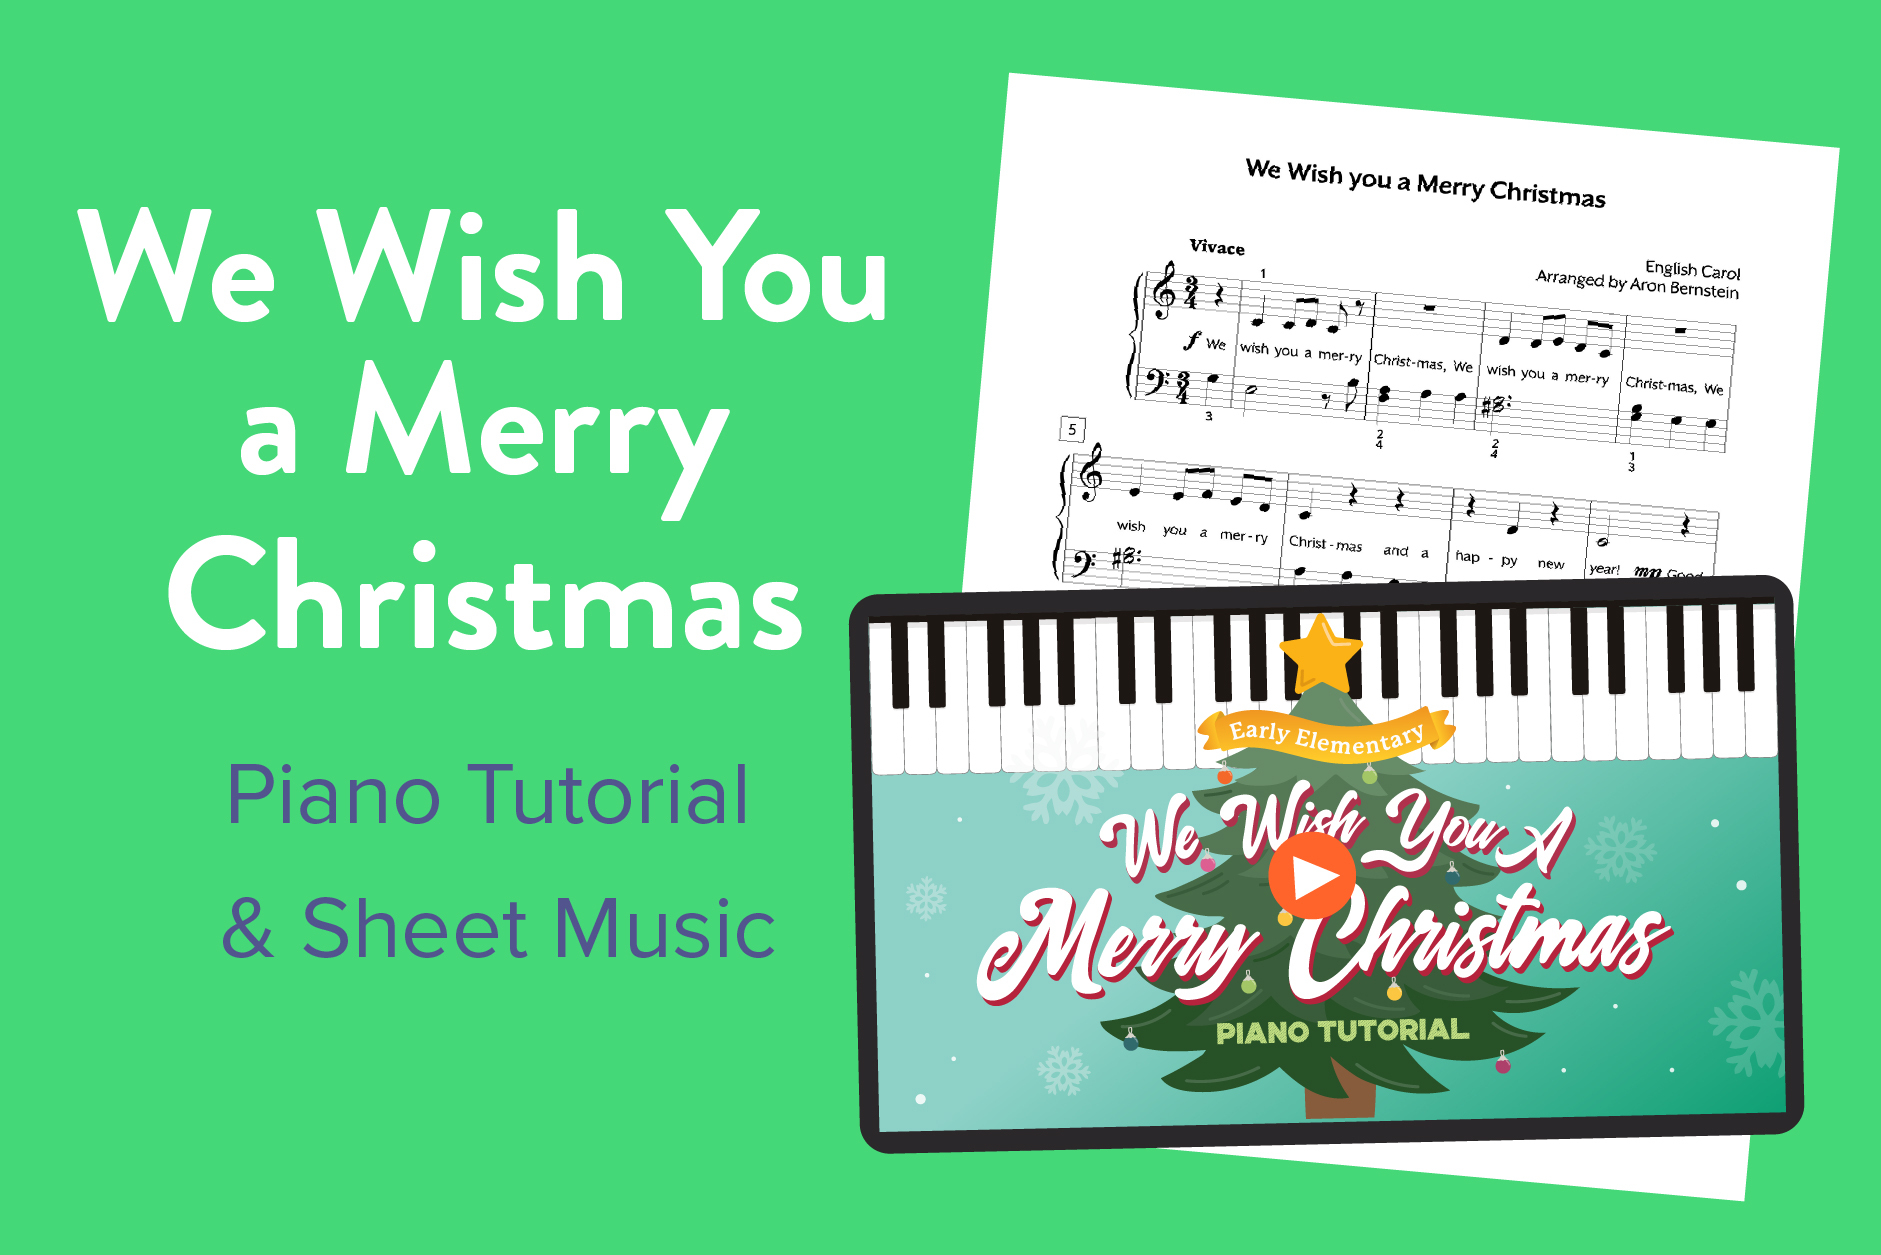 Jingle Bells Sheet Music - Hoffman Academy Blog